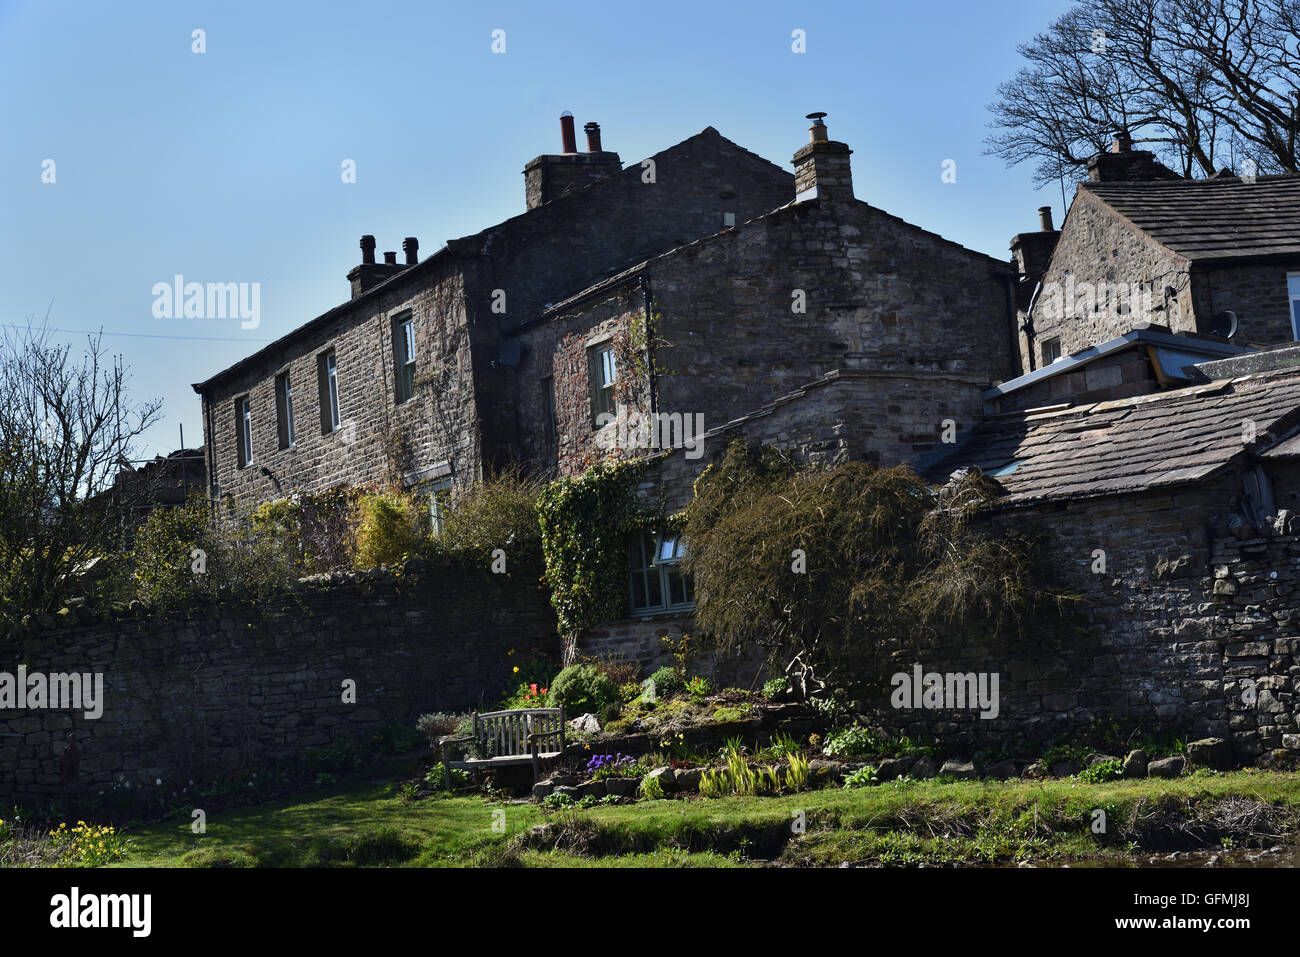 Häuser und Gärten, Gayle Dorf, obere Wensleydale, Yorkshire Dales National Park, North Yorkshire, England, uk. Stockfoto